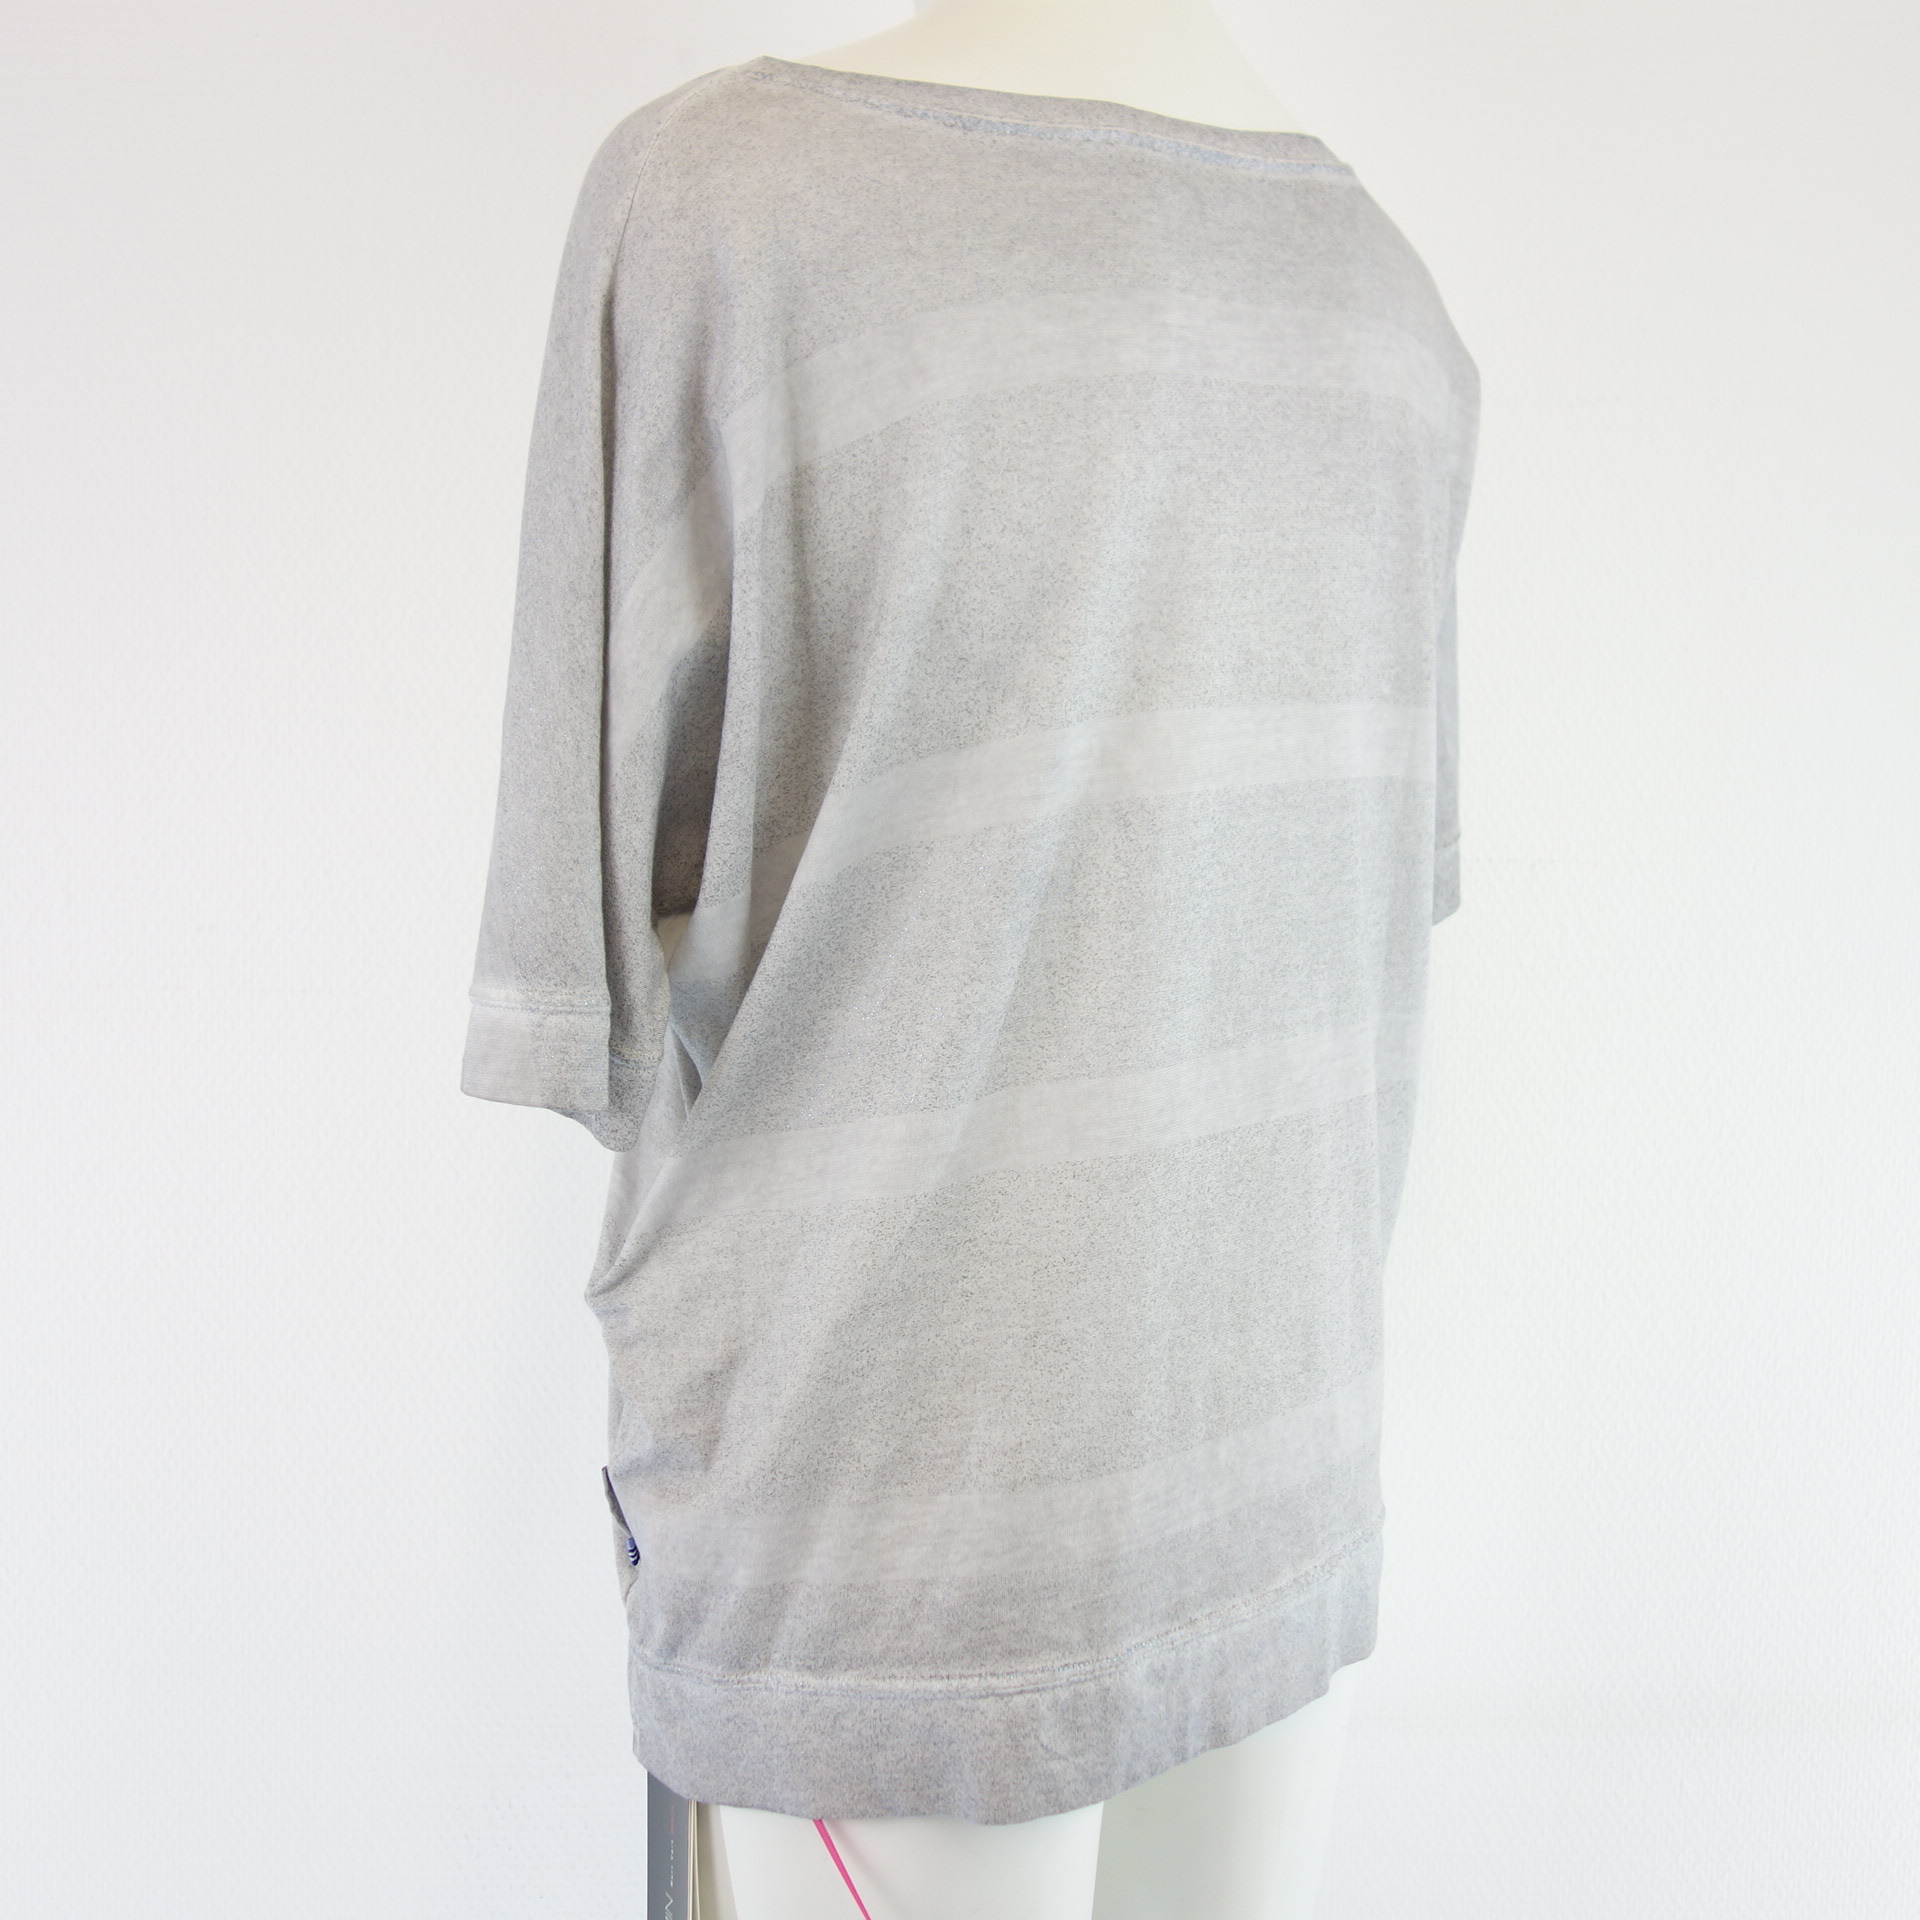 MARC CAIN Damen Shirt T-Shirt Oberteil Grau Oversize Schnitt 100% Baumwolle  Größe N2 36